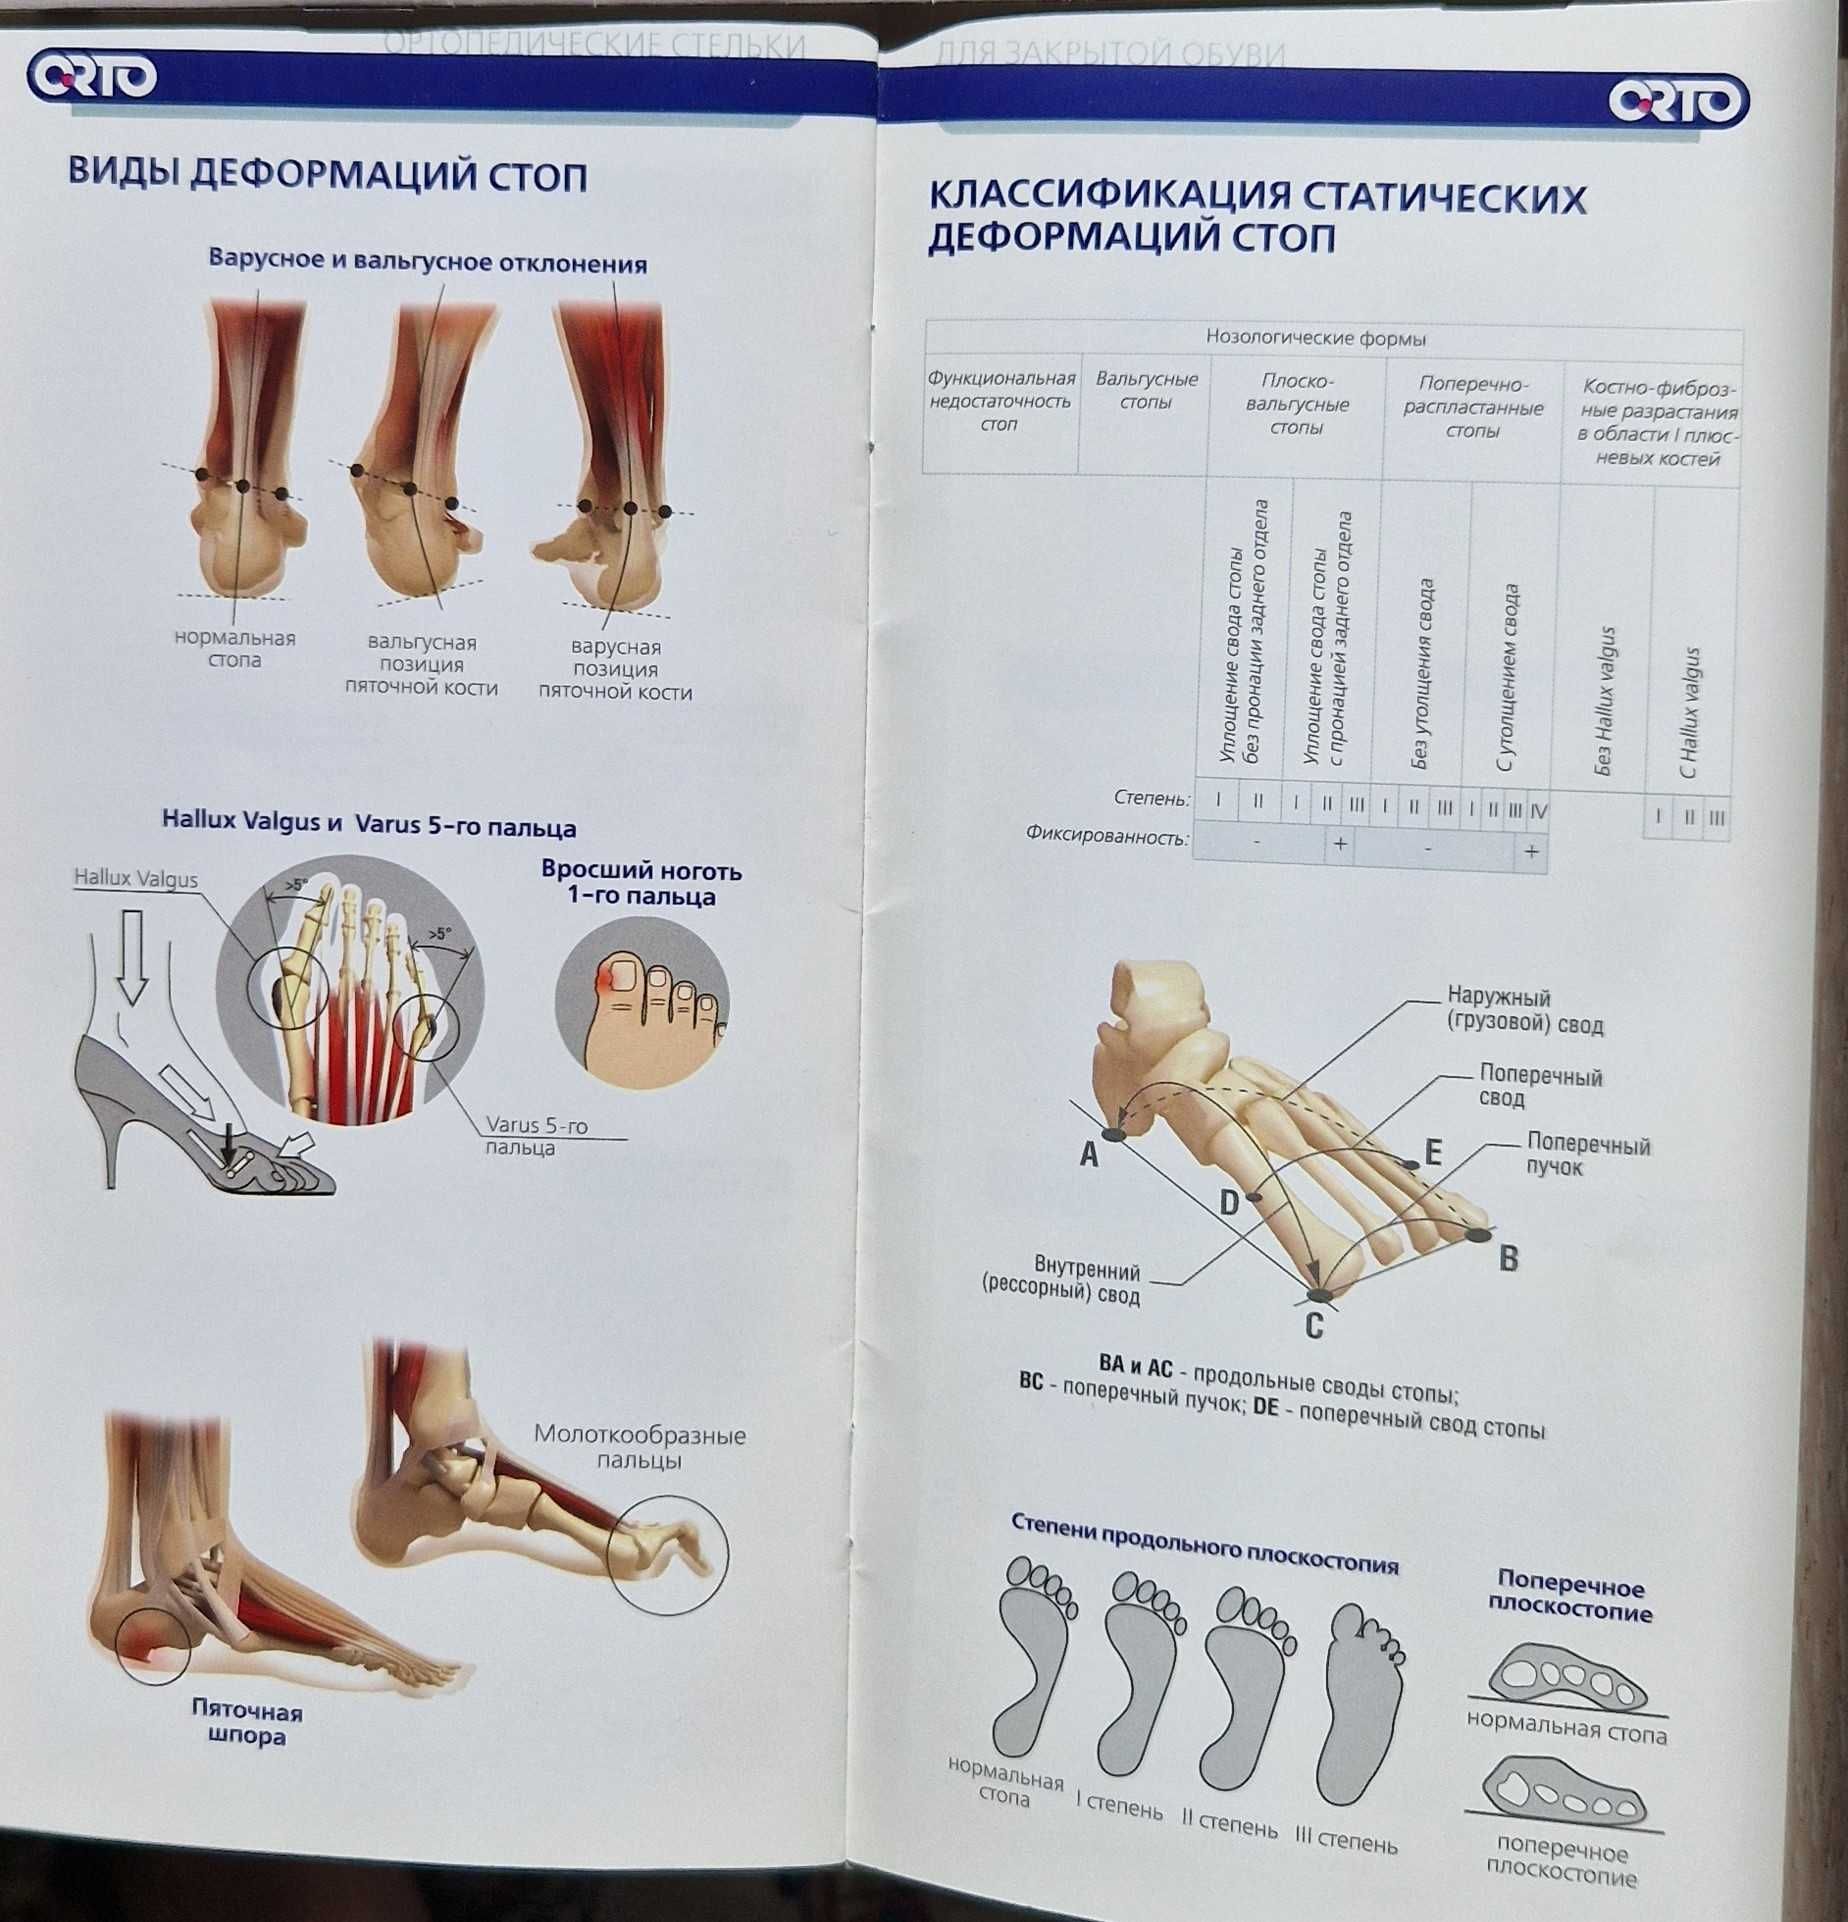 Ортопедические стельки детские (Производитель ORTO, Германия)